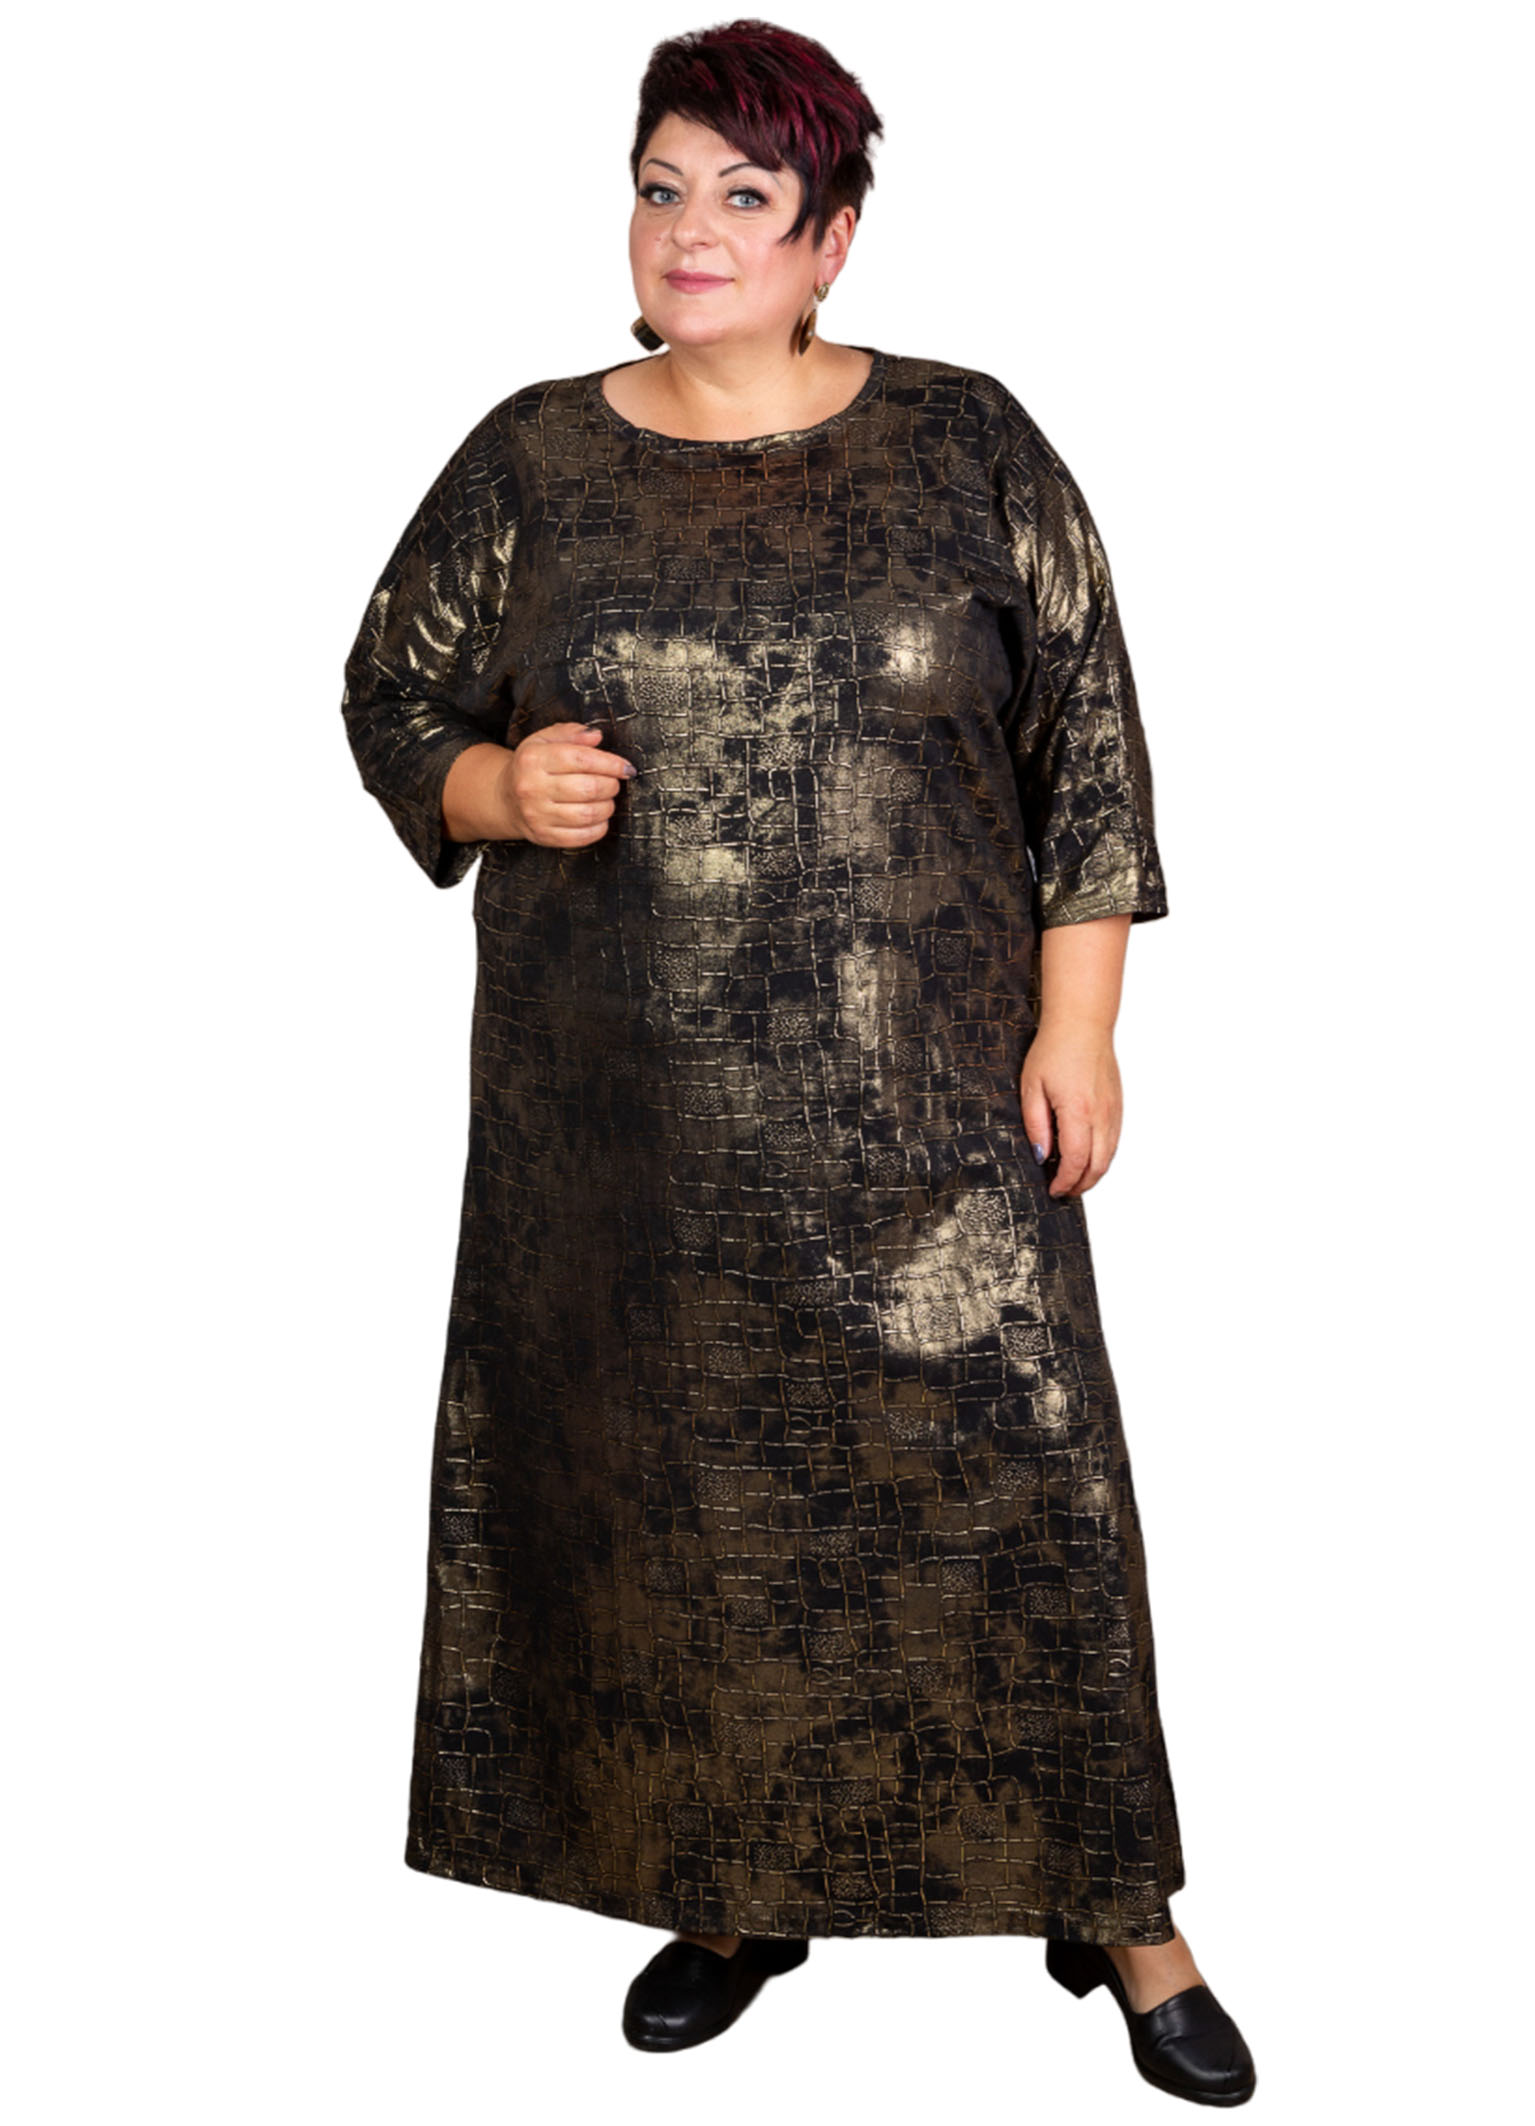 Платье женское Полное Счастье ОК-ПЛ-23-0310 черное 60 RU